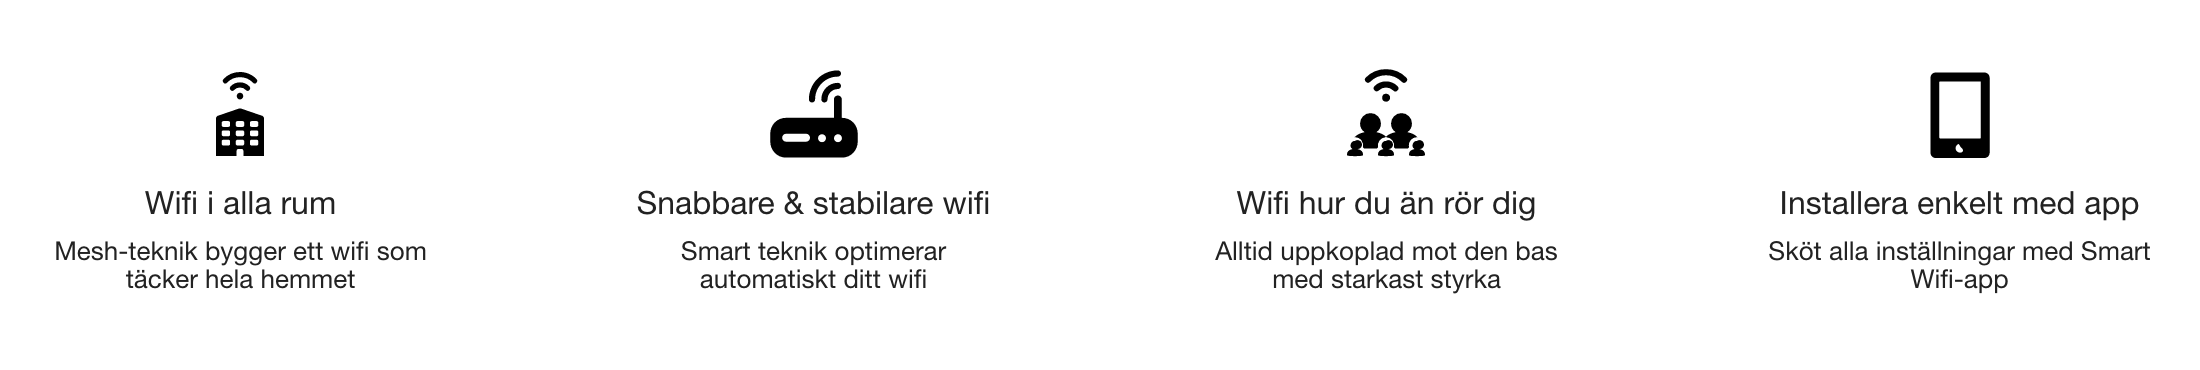 telia smart wifi plus sellpoints